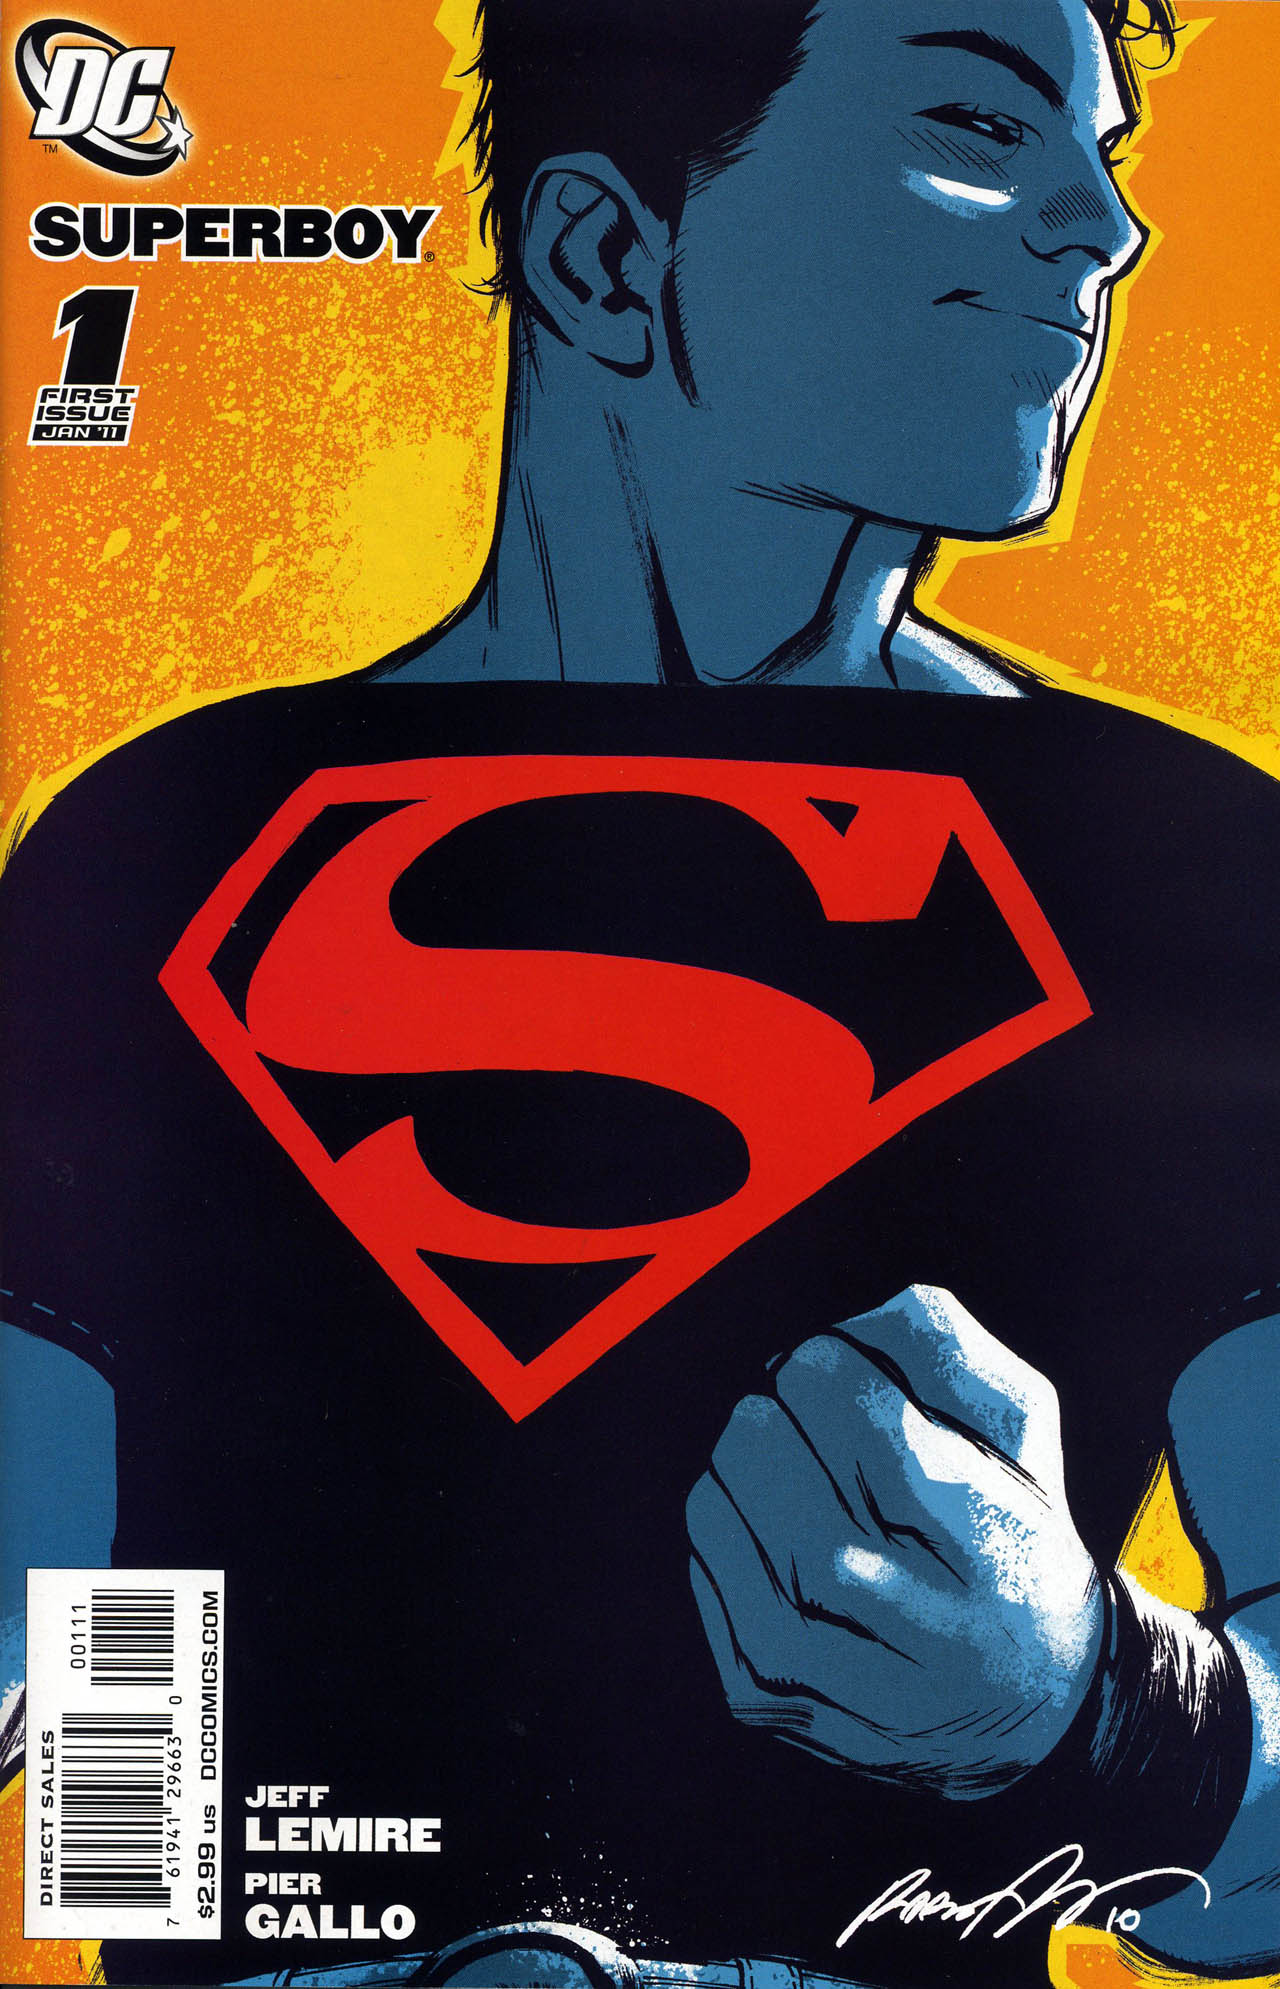 Superboy Vol. 5 #1